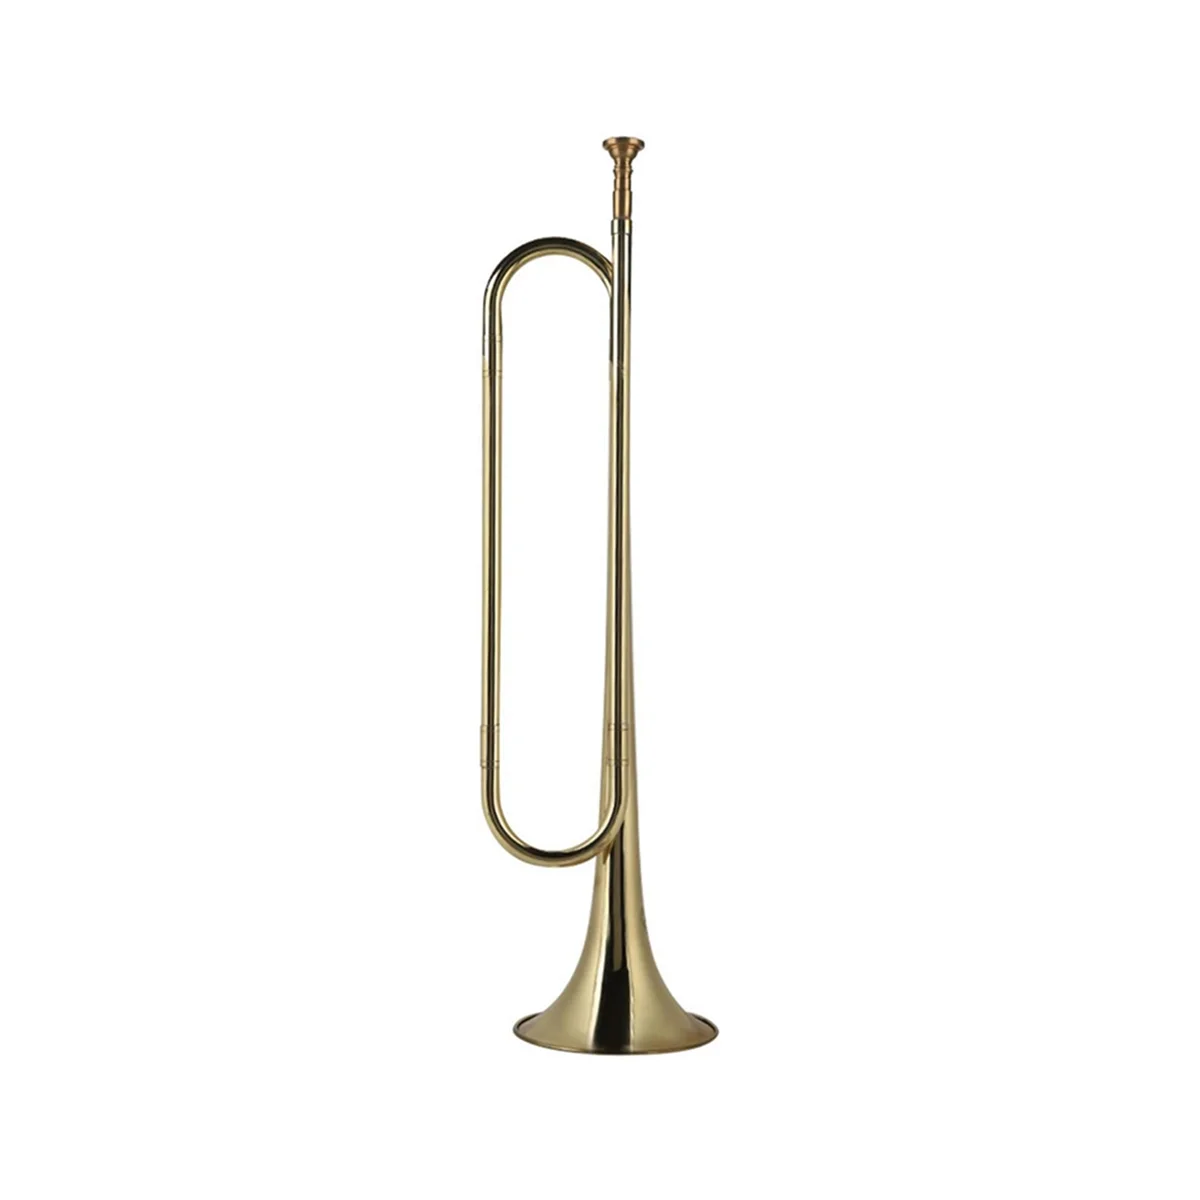 

Латунная Труба, стандартный набор труб, легко играть, качественный латунный оркестровый инструмент для студентов и начинающих